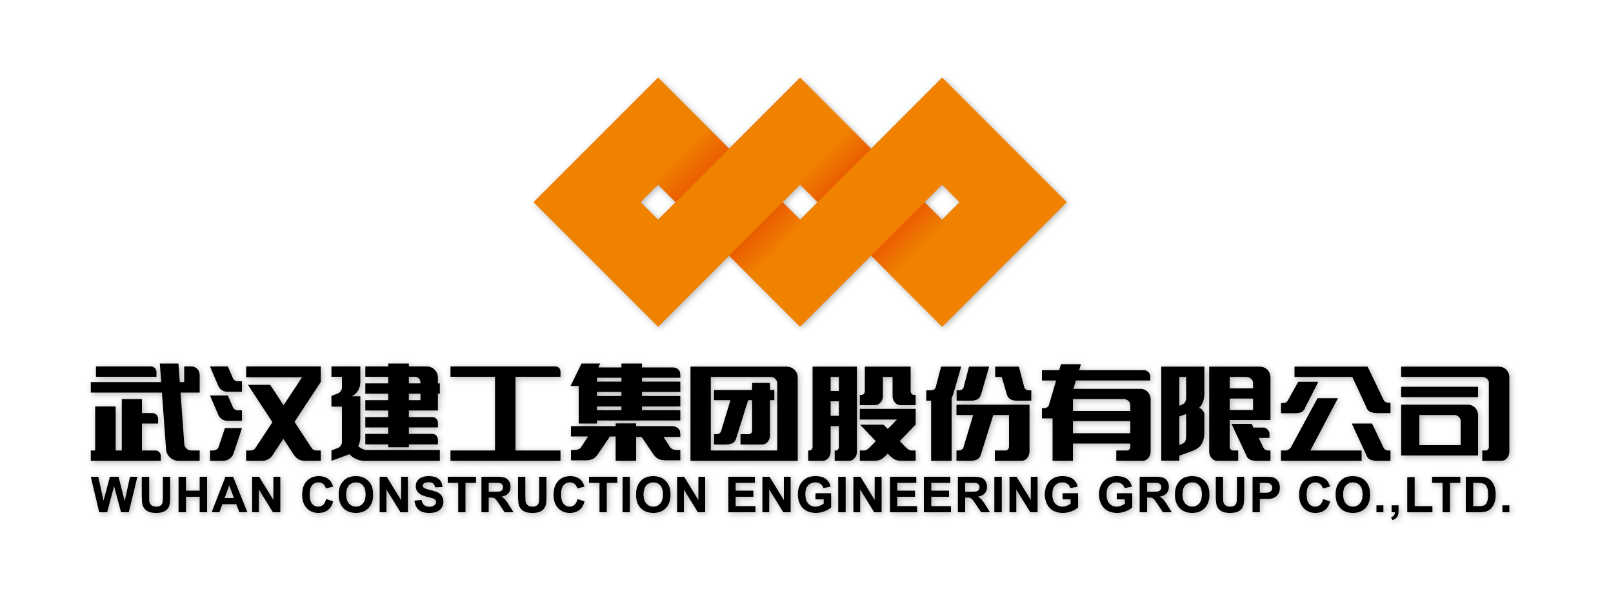 武汉建工集团股份有限公司武汉建工集团前身是1952年成立的武汉市建筑